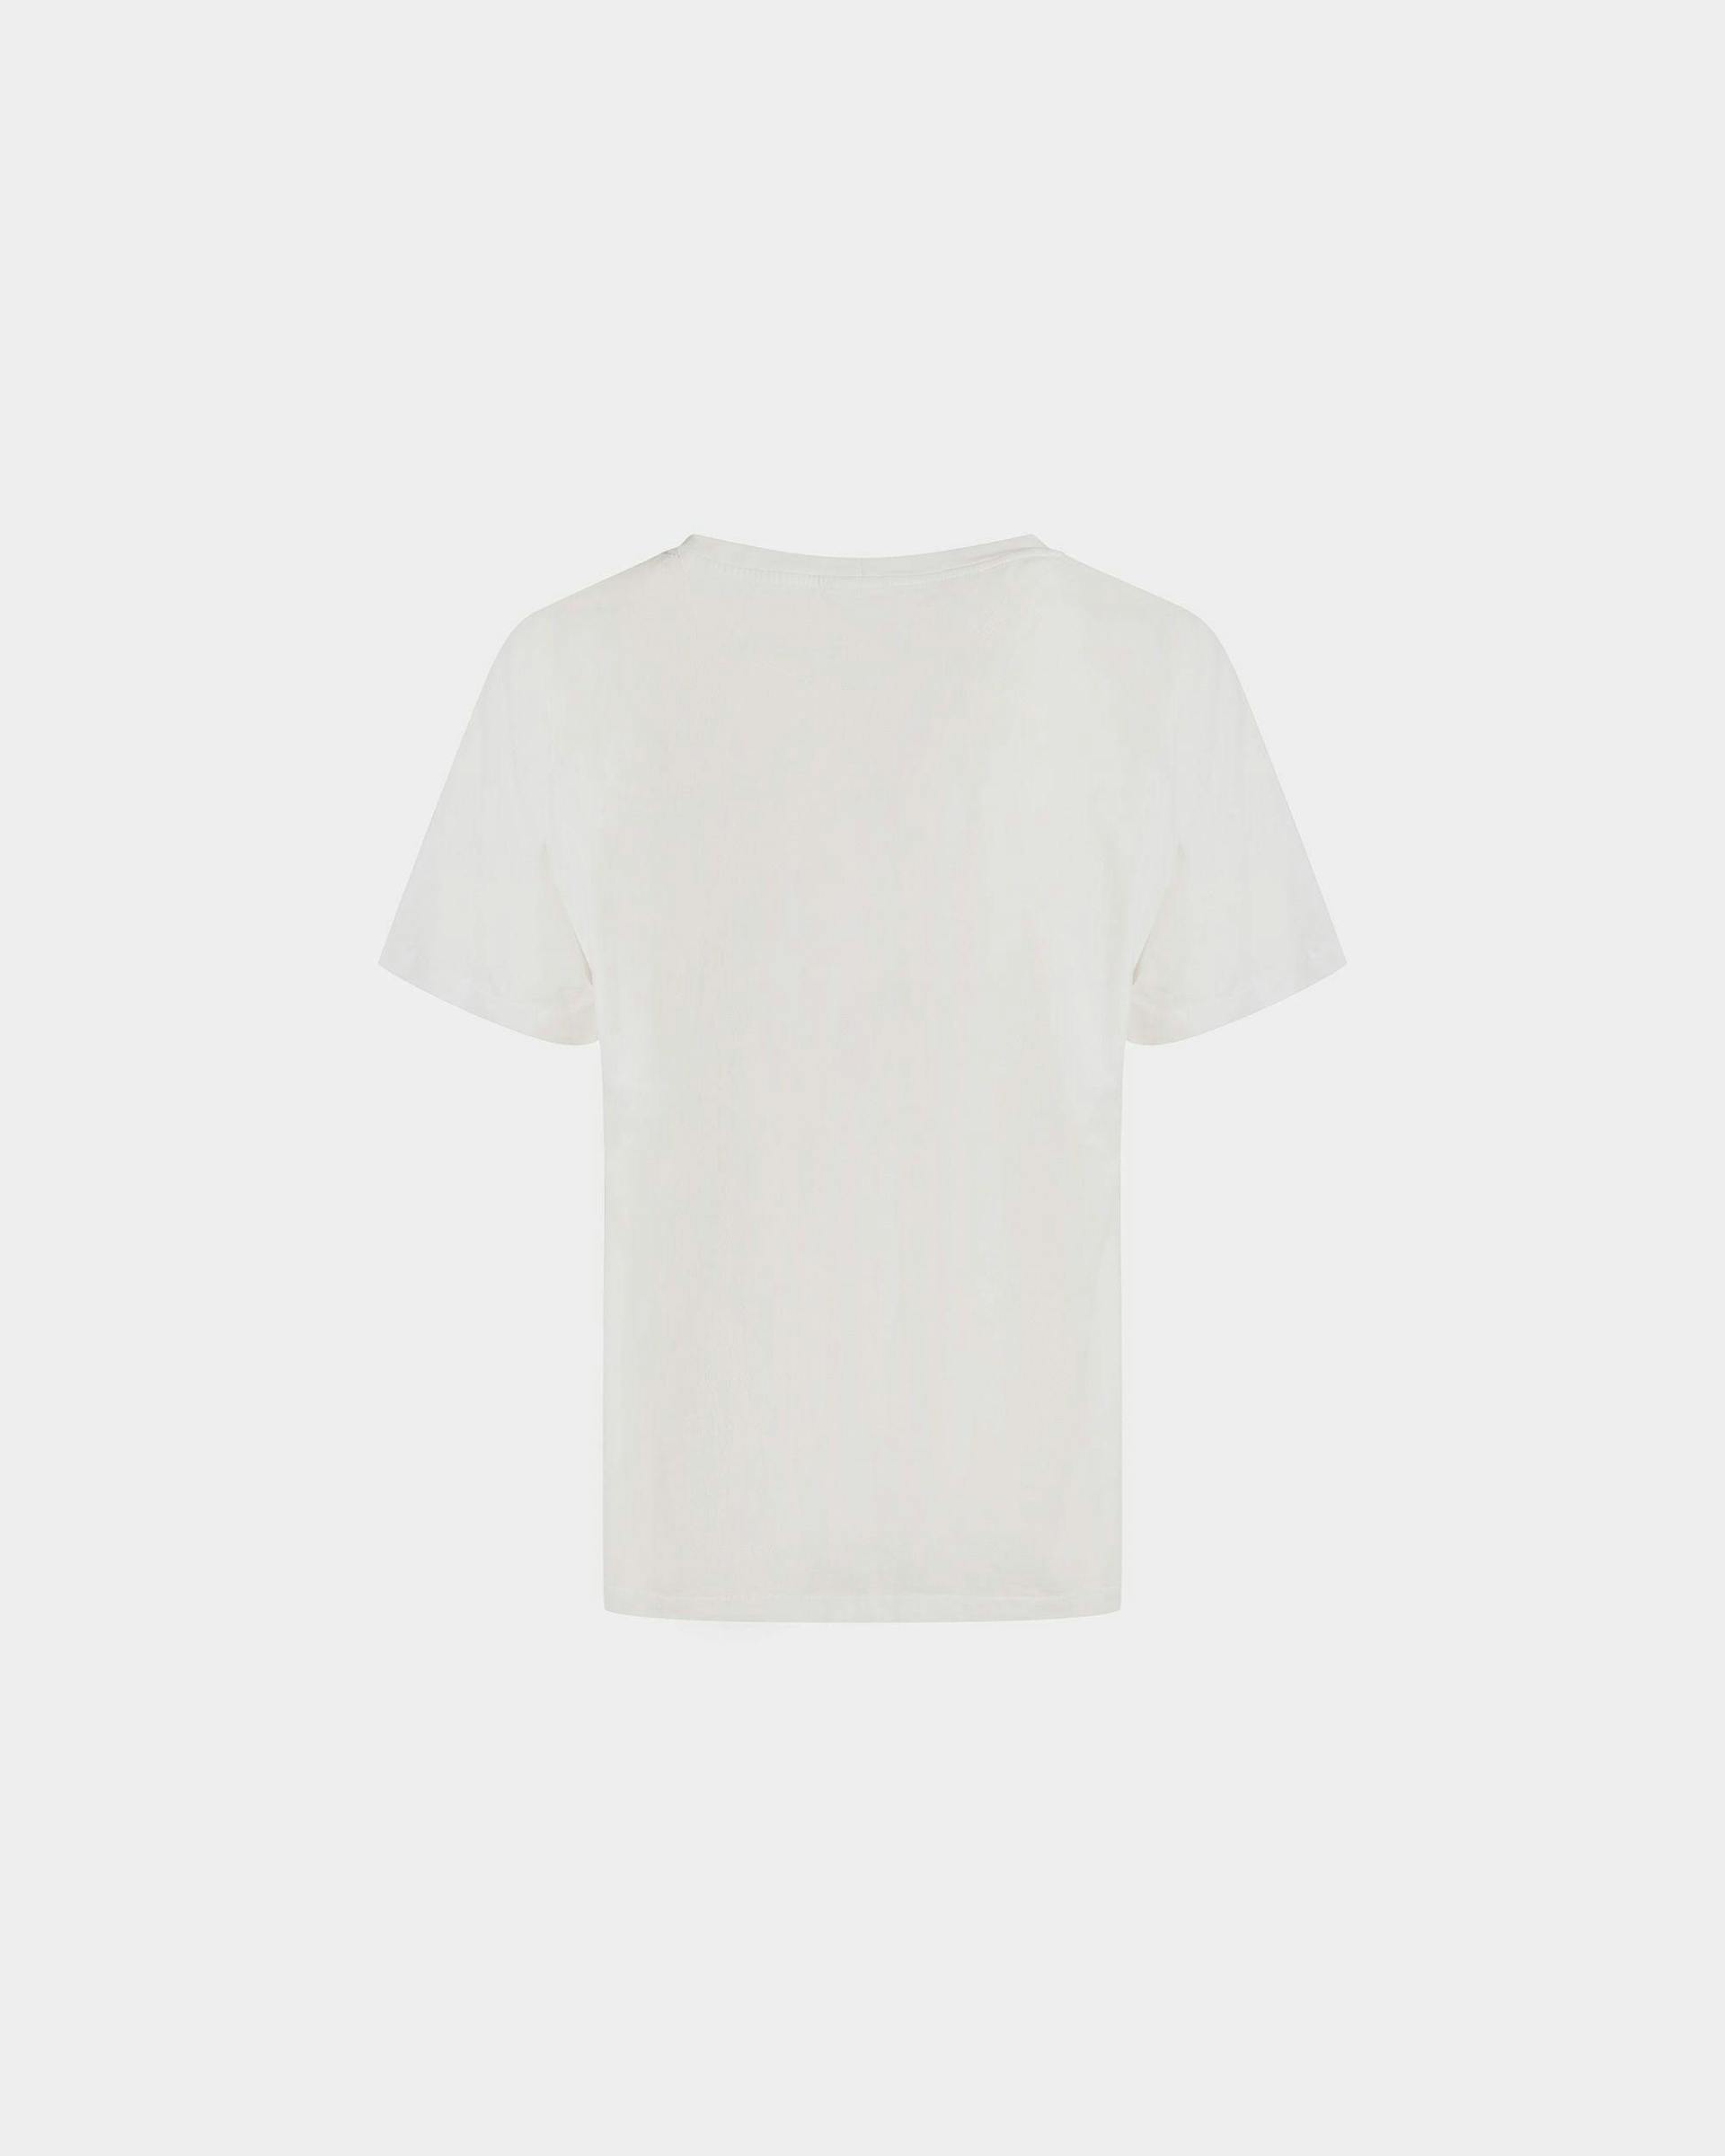 Men's Foiled T-Shirt In White Cotton | Bally | Still Life Back